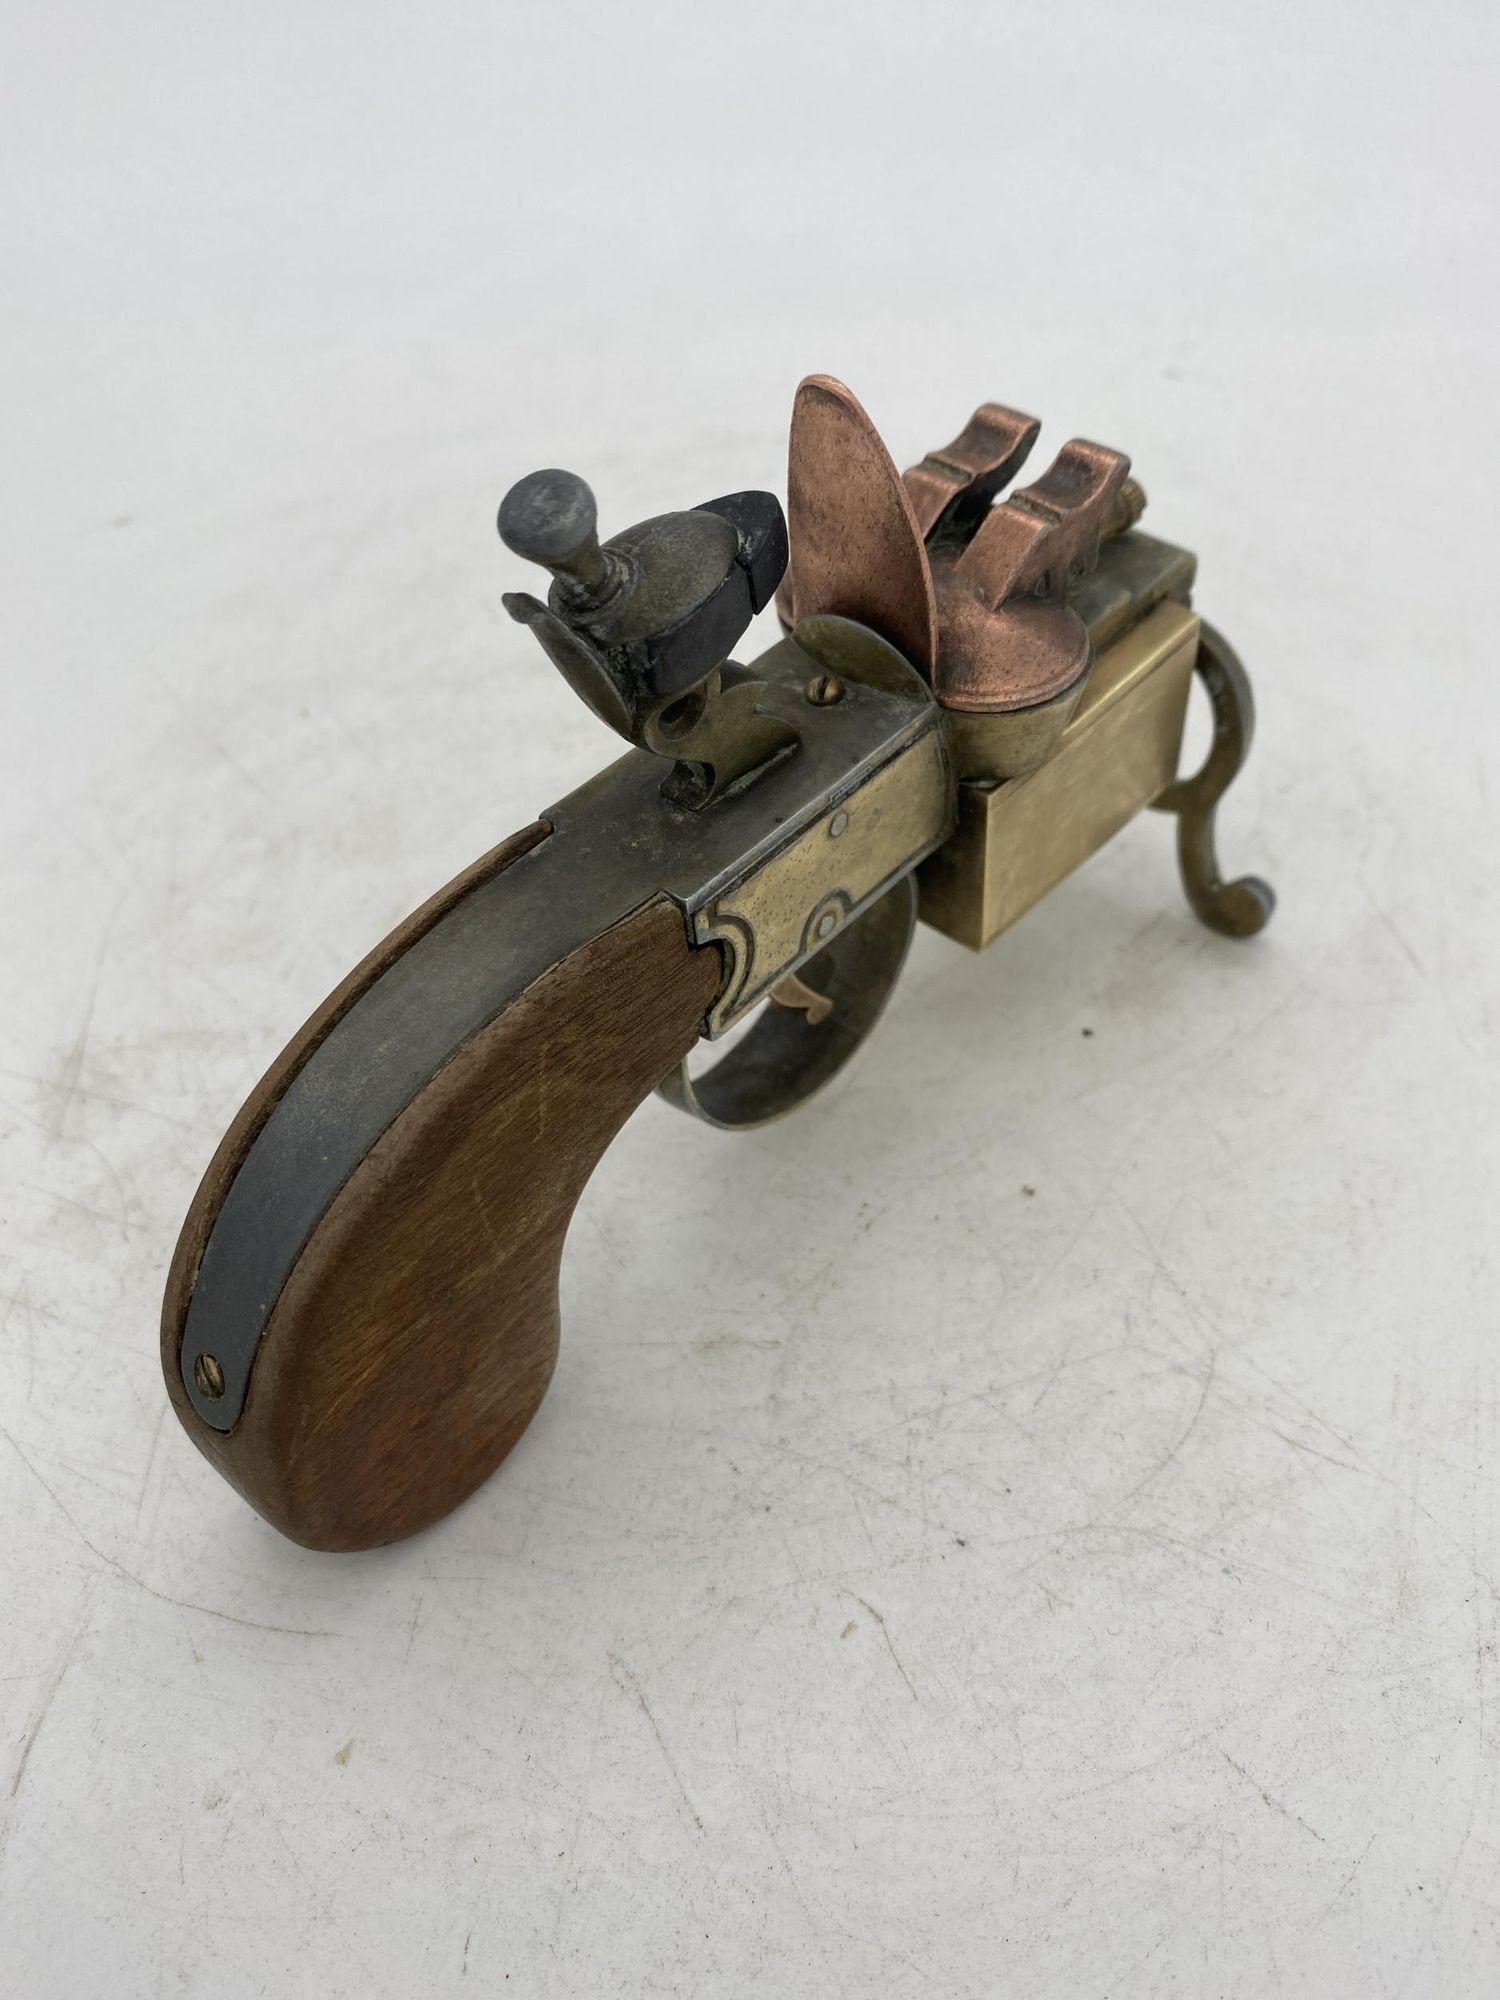 Diese Dunhill Zunderpistole ist ein schönes Beispiel für ein außergewöhnliches Tischfeuerzeug, das die Form einer Steinschloss-Zunderpistole aus dem XVIII Jahrhundert hat.
Er ist aus Messing gefertigt und hat eine antike Messingoberfläche und einen